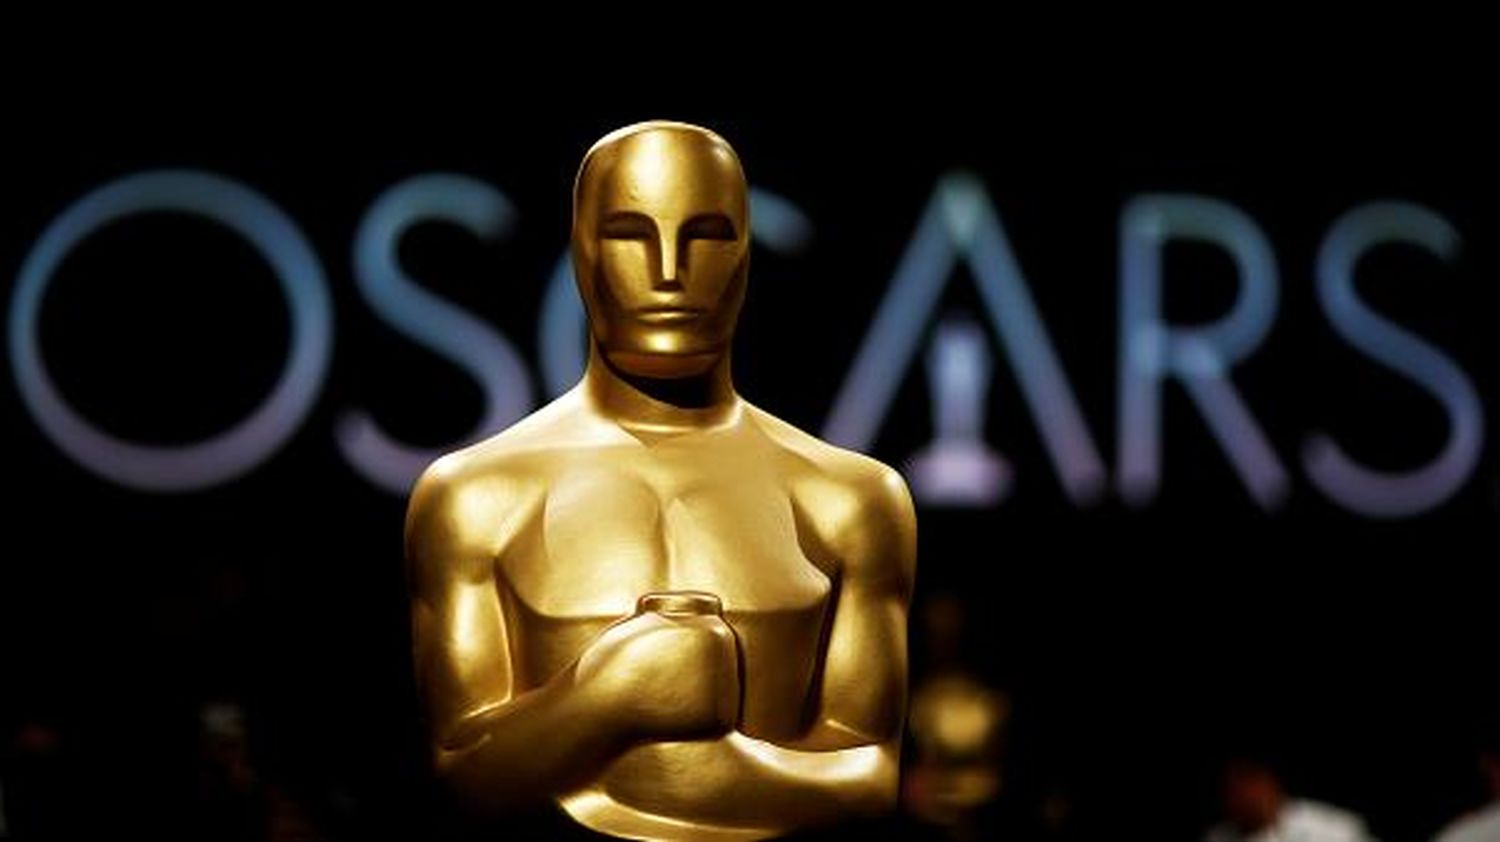 «Оскар-2020»: оголошено номінантів